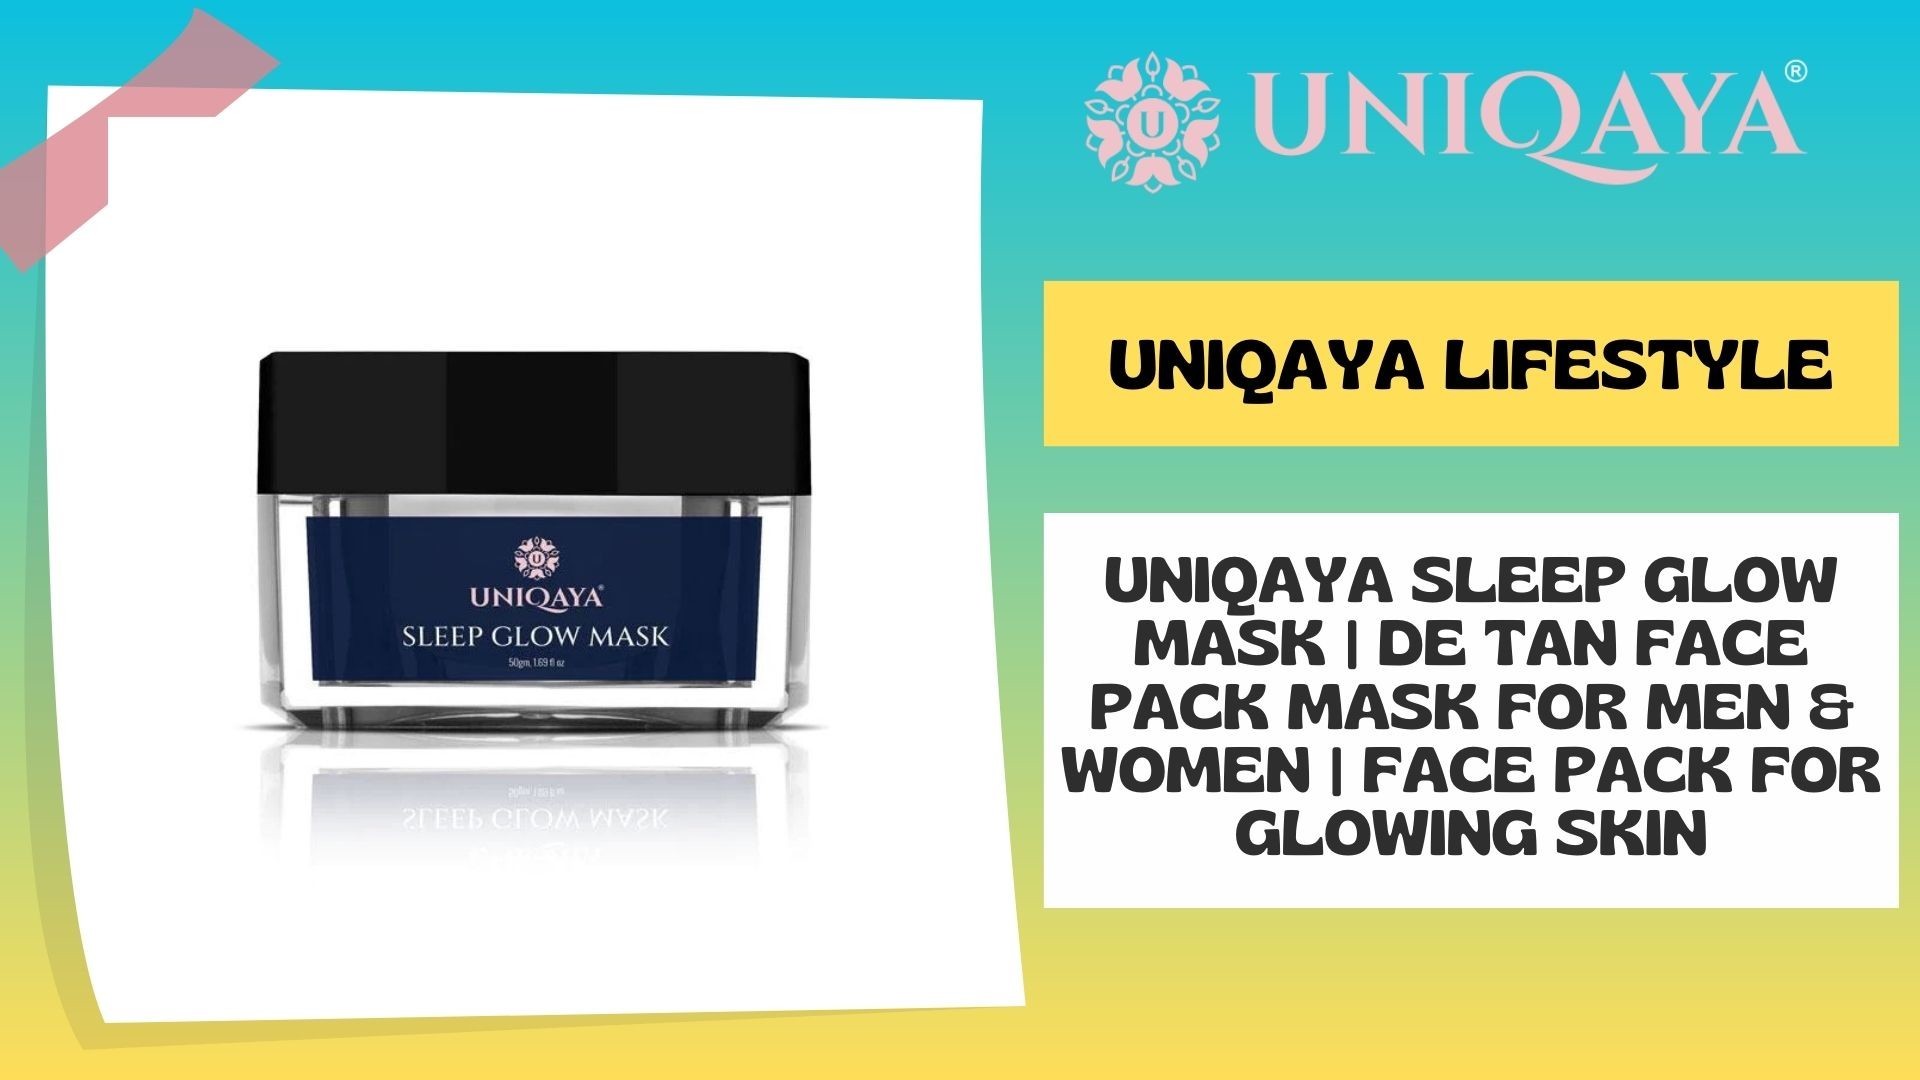 UniQaya Sleep Glow Mask